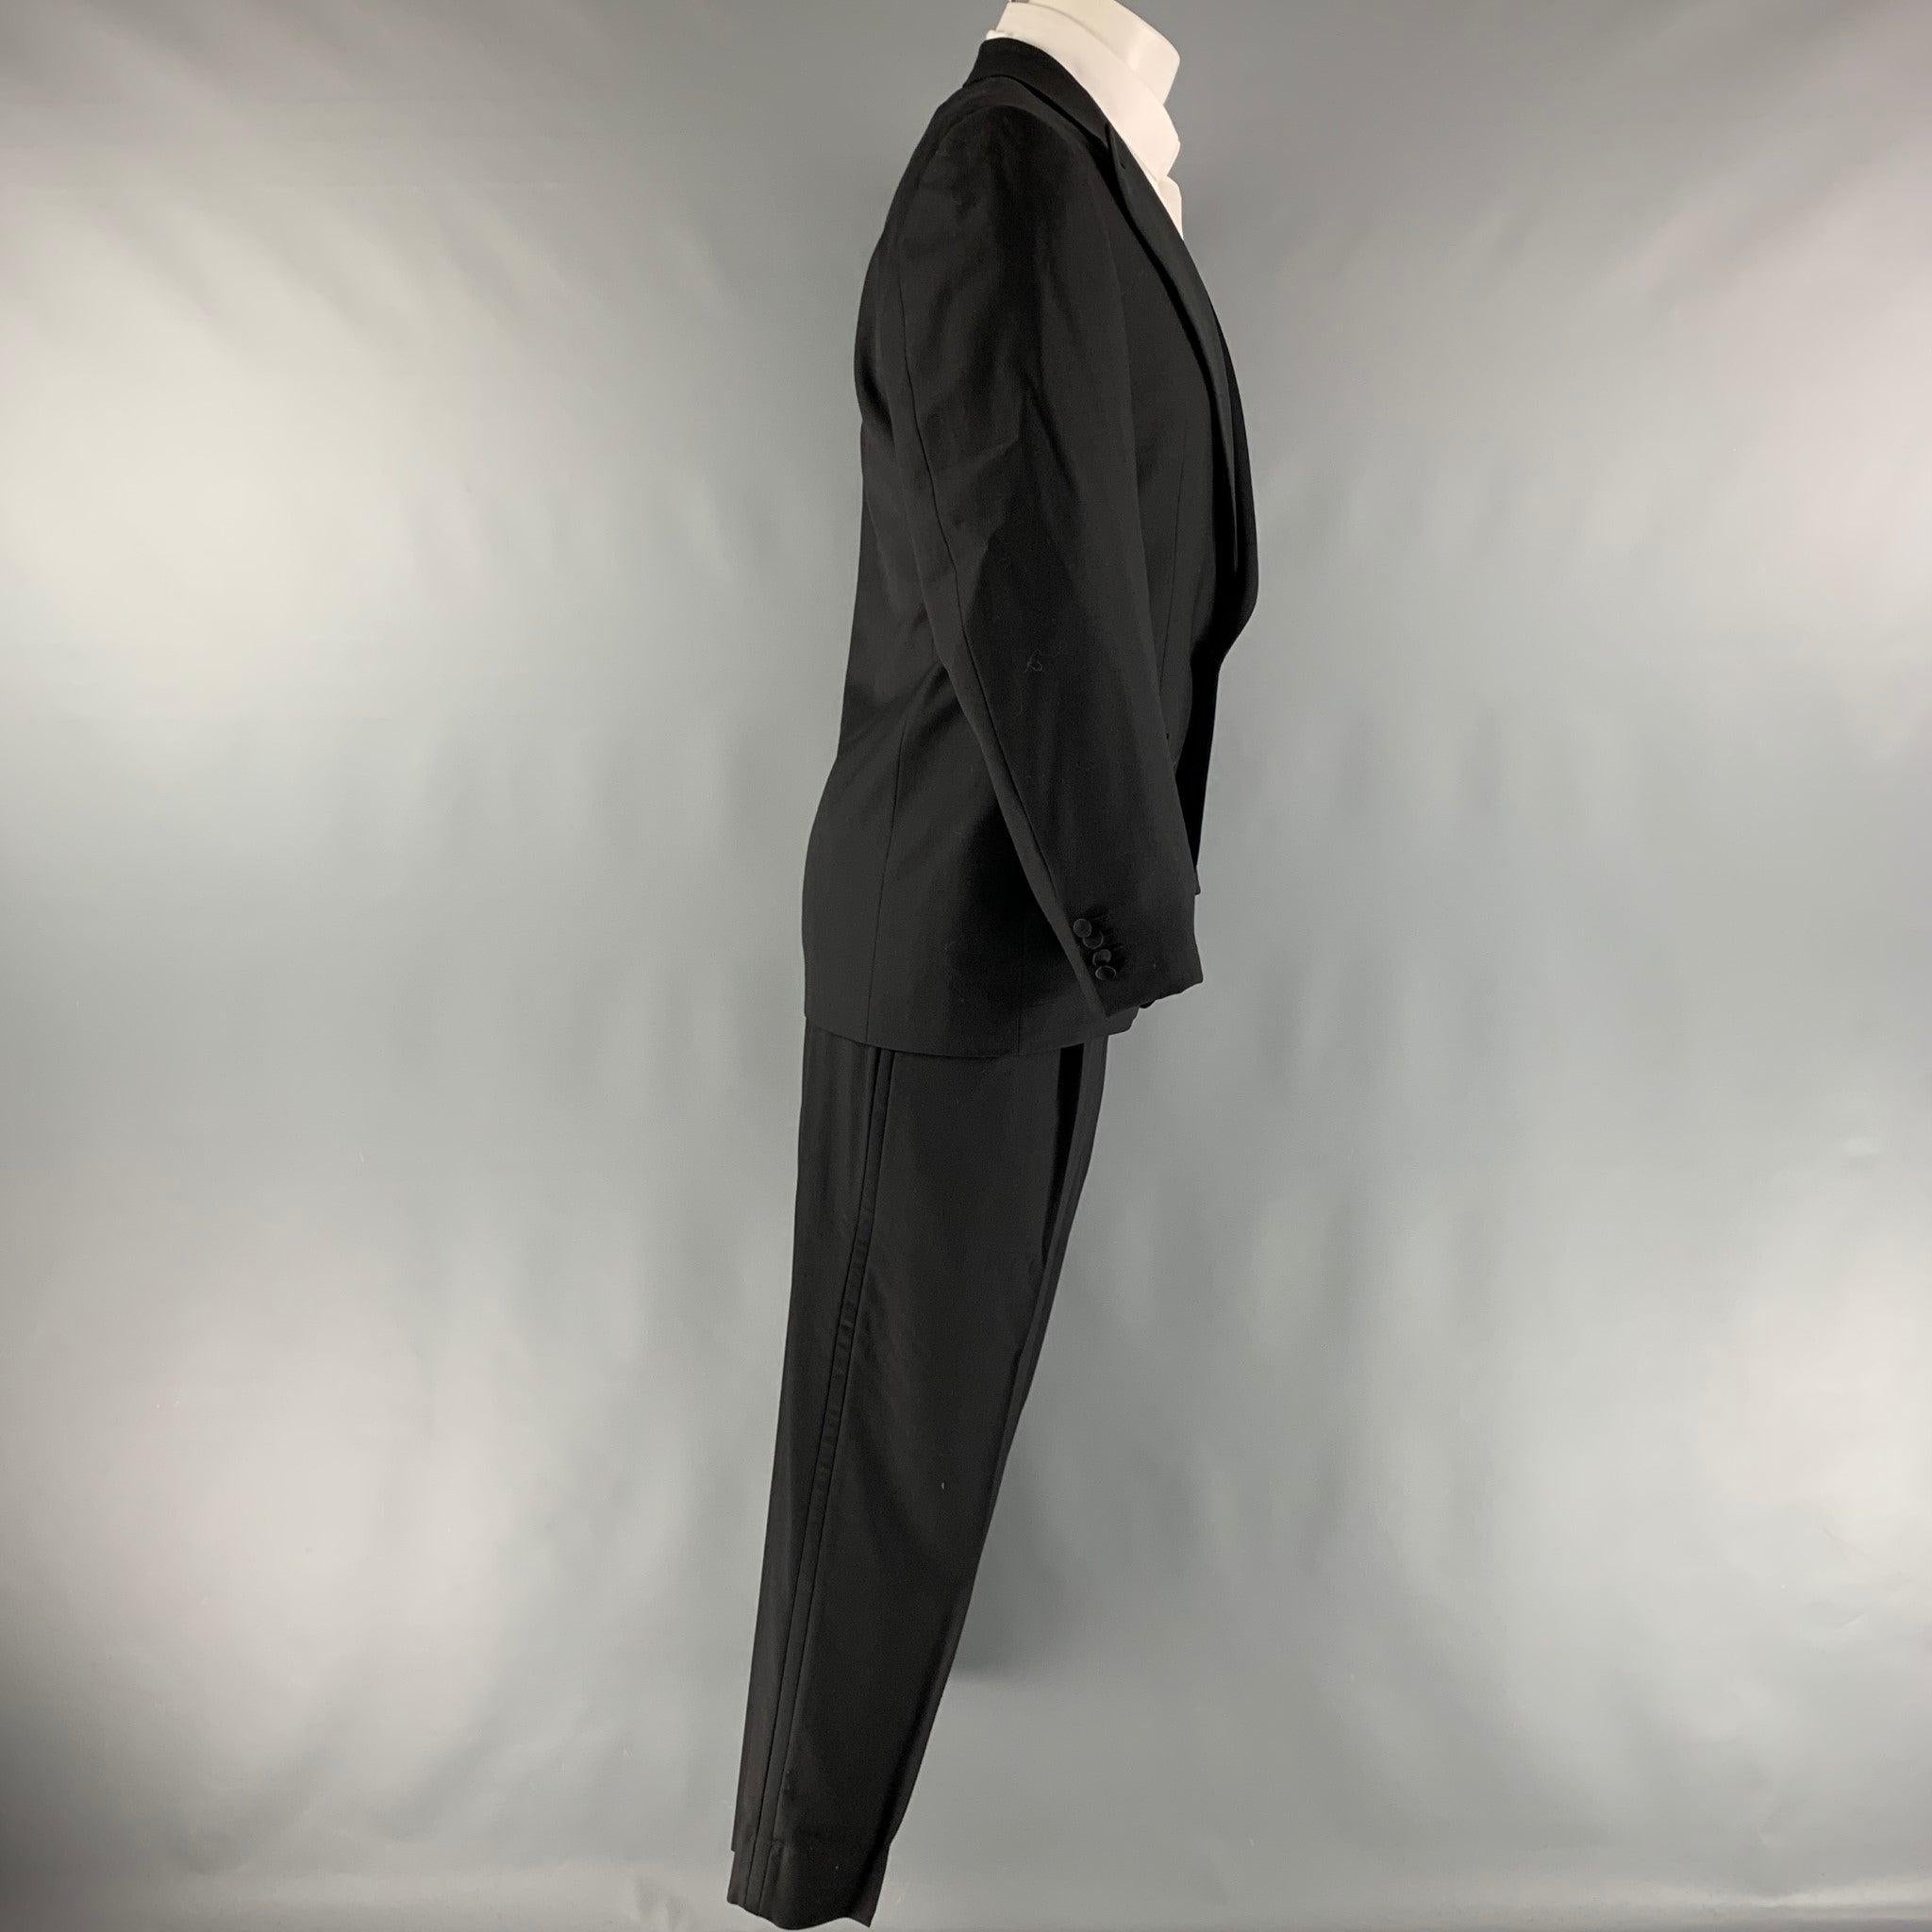 Le smoking ERMENEGILDO Zegna pour Neiman Marcus est en laine noire avec une doublure complète et comprend un manteau de sport à un seul boutonnage avec un revers en pointe et un pantalon à plis assorti. Fabriqué en Suisse. Excellent état. 

Marqué :